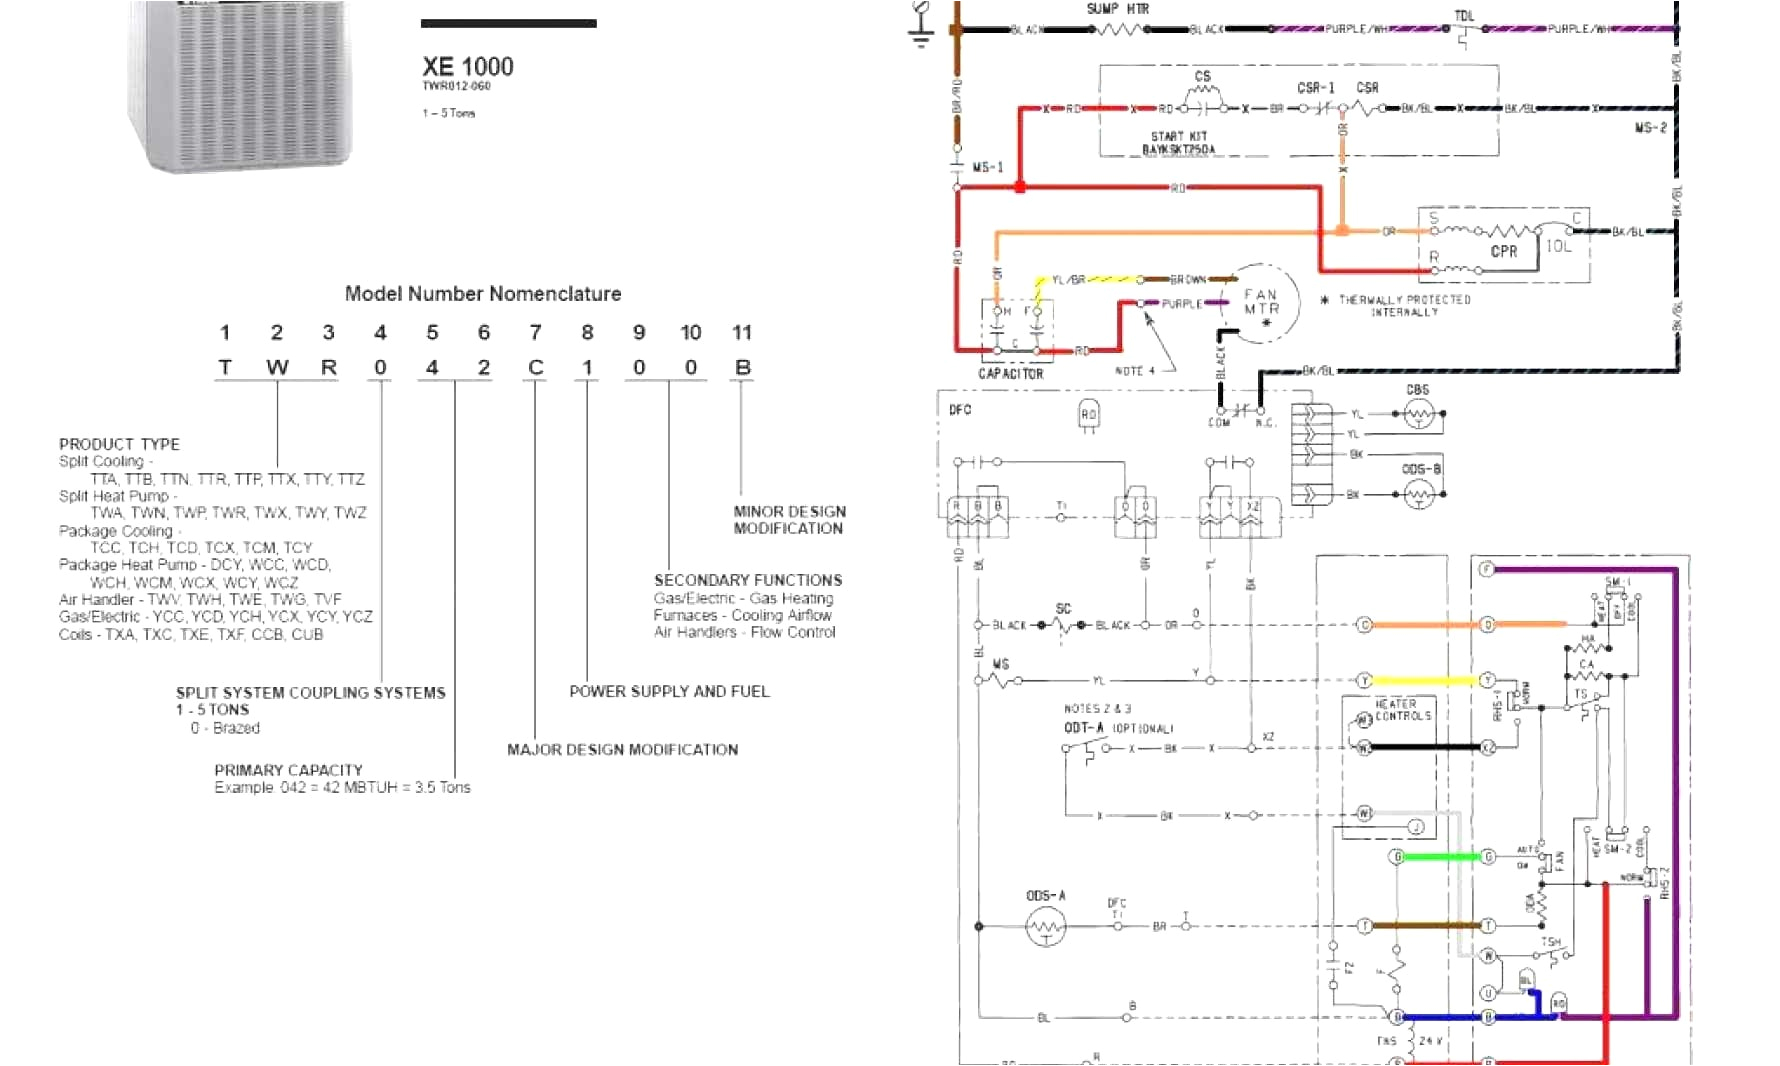 wrg 1374 xe 1200 fan motor wiring diagramtrane xe 1000 parts schematic trane xe 1000